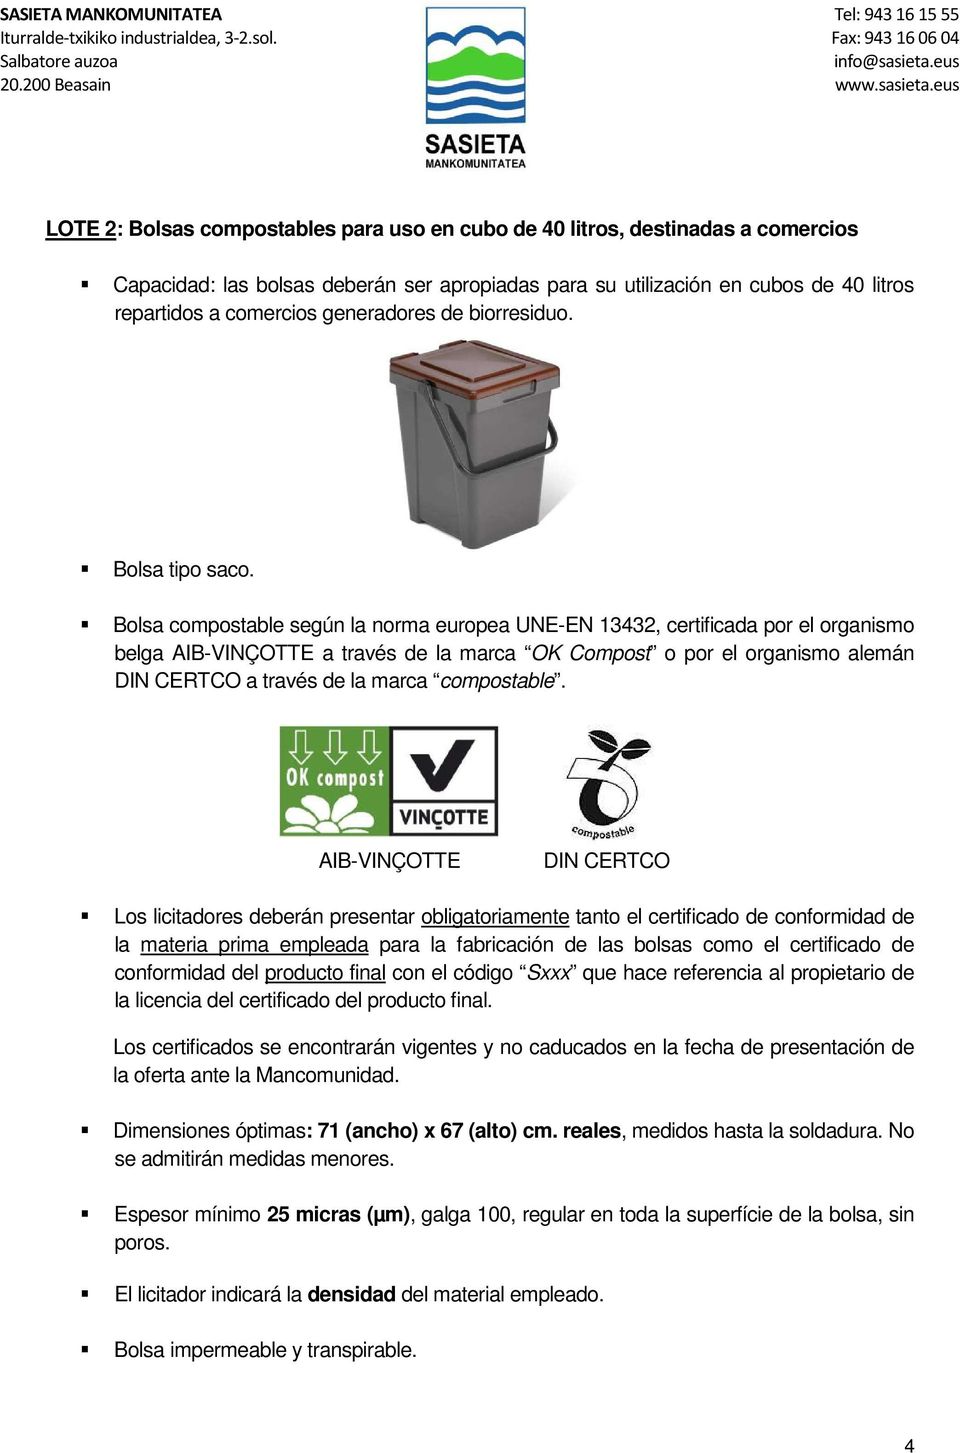 Bolsa compostable según la norma europea UNE-EN 13432, certificada por el organismo belga AIB-VINÇOTTE a través de la marca OK Compost o por el organismo alemán DIN CERTCO a través de la marca